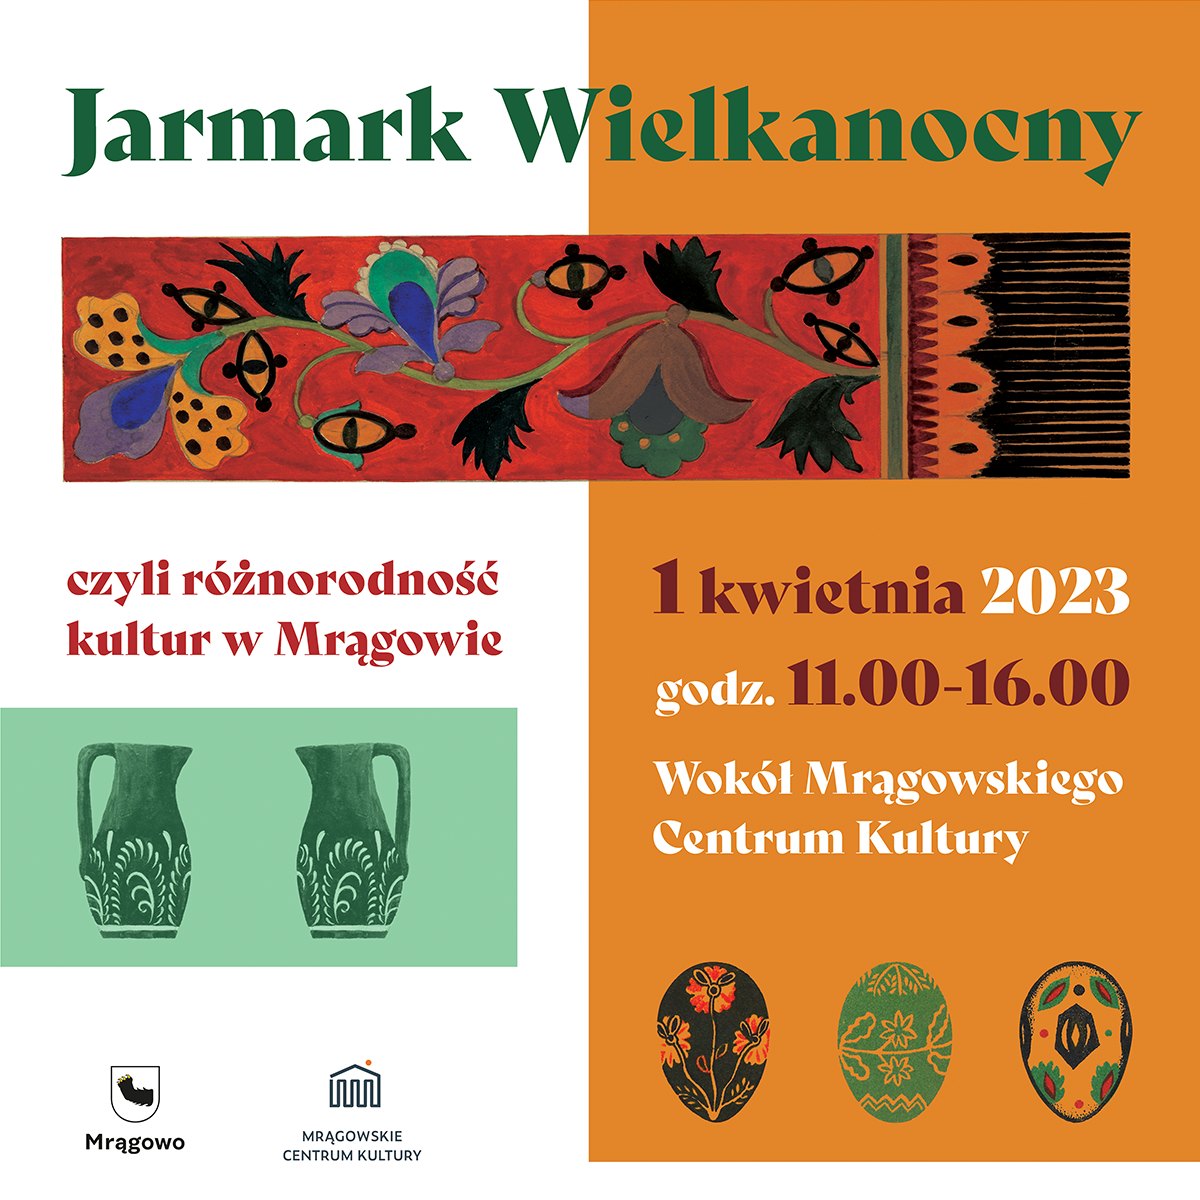 Plakat zapraszający w sobotę 1 kwietnia 2023 r. do Mrągowa na Jarmark Wielkanocny Mrągowo 2023.